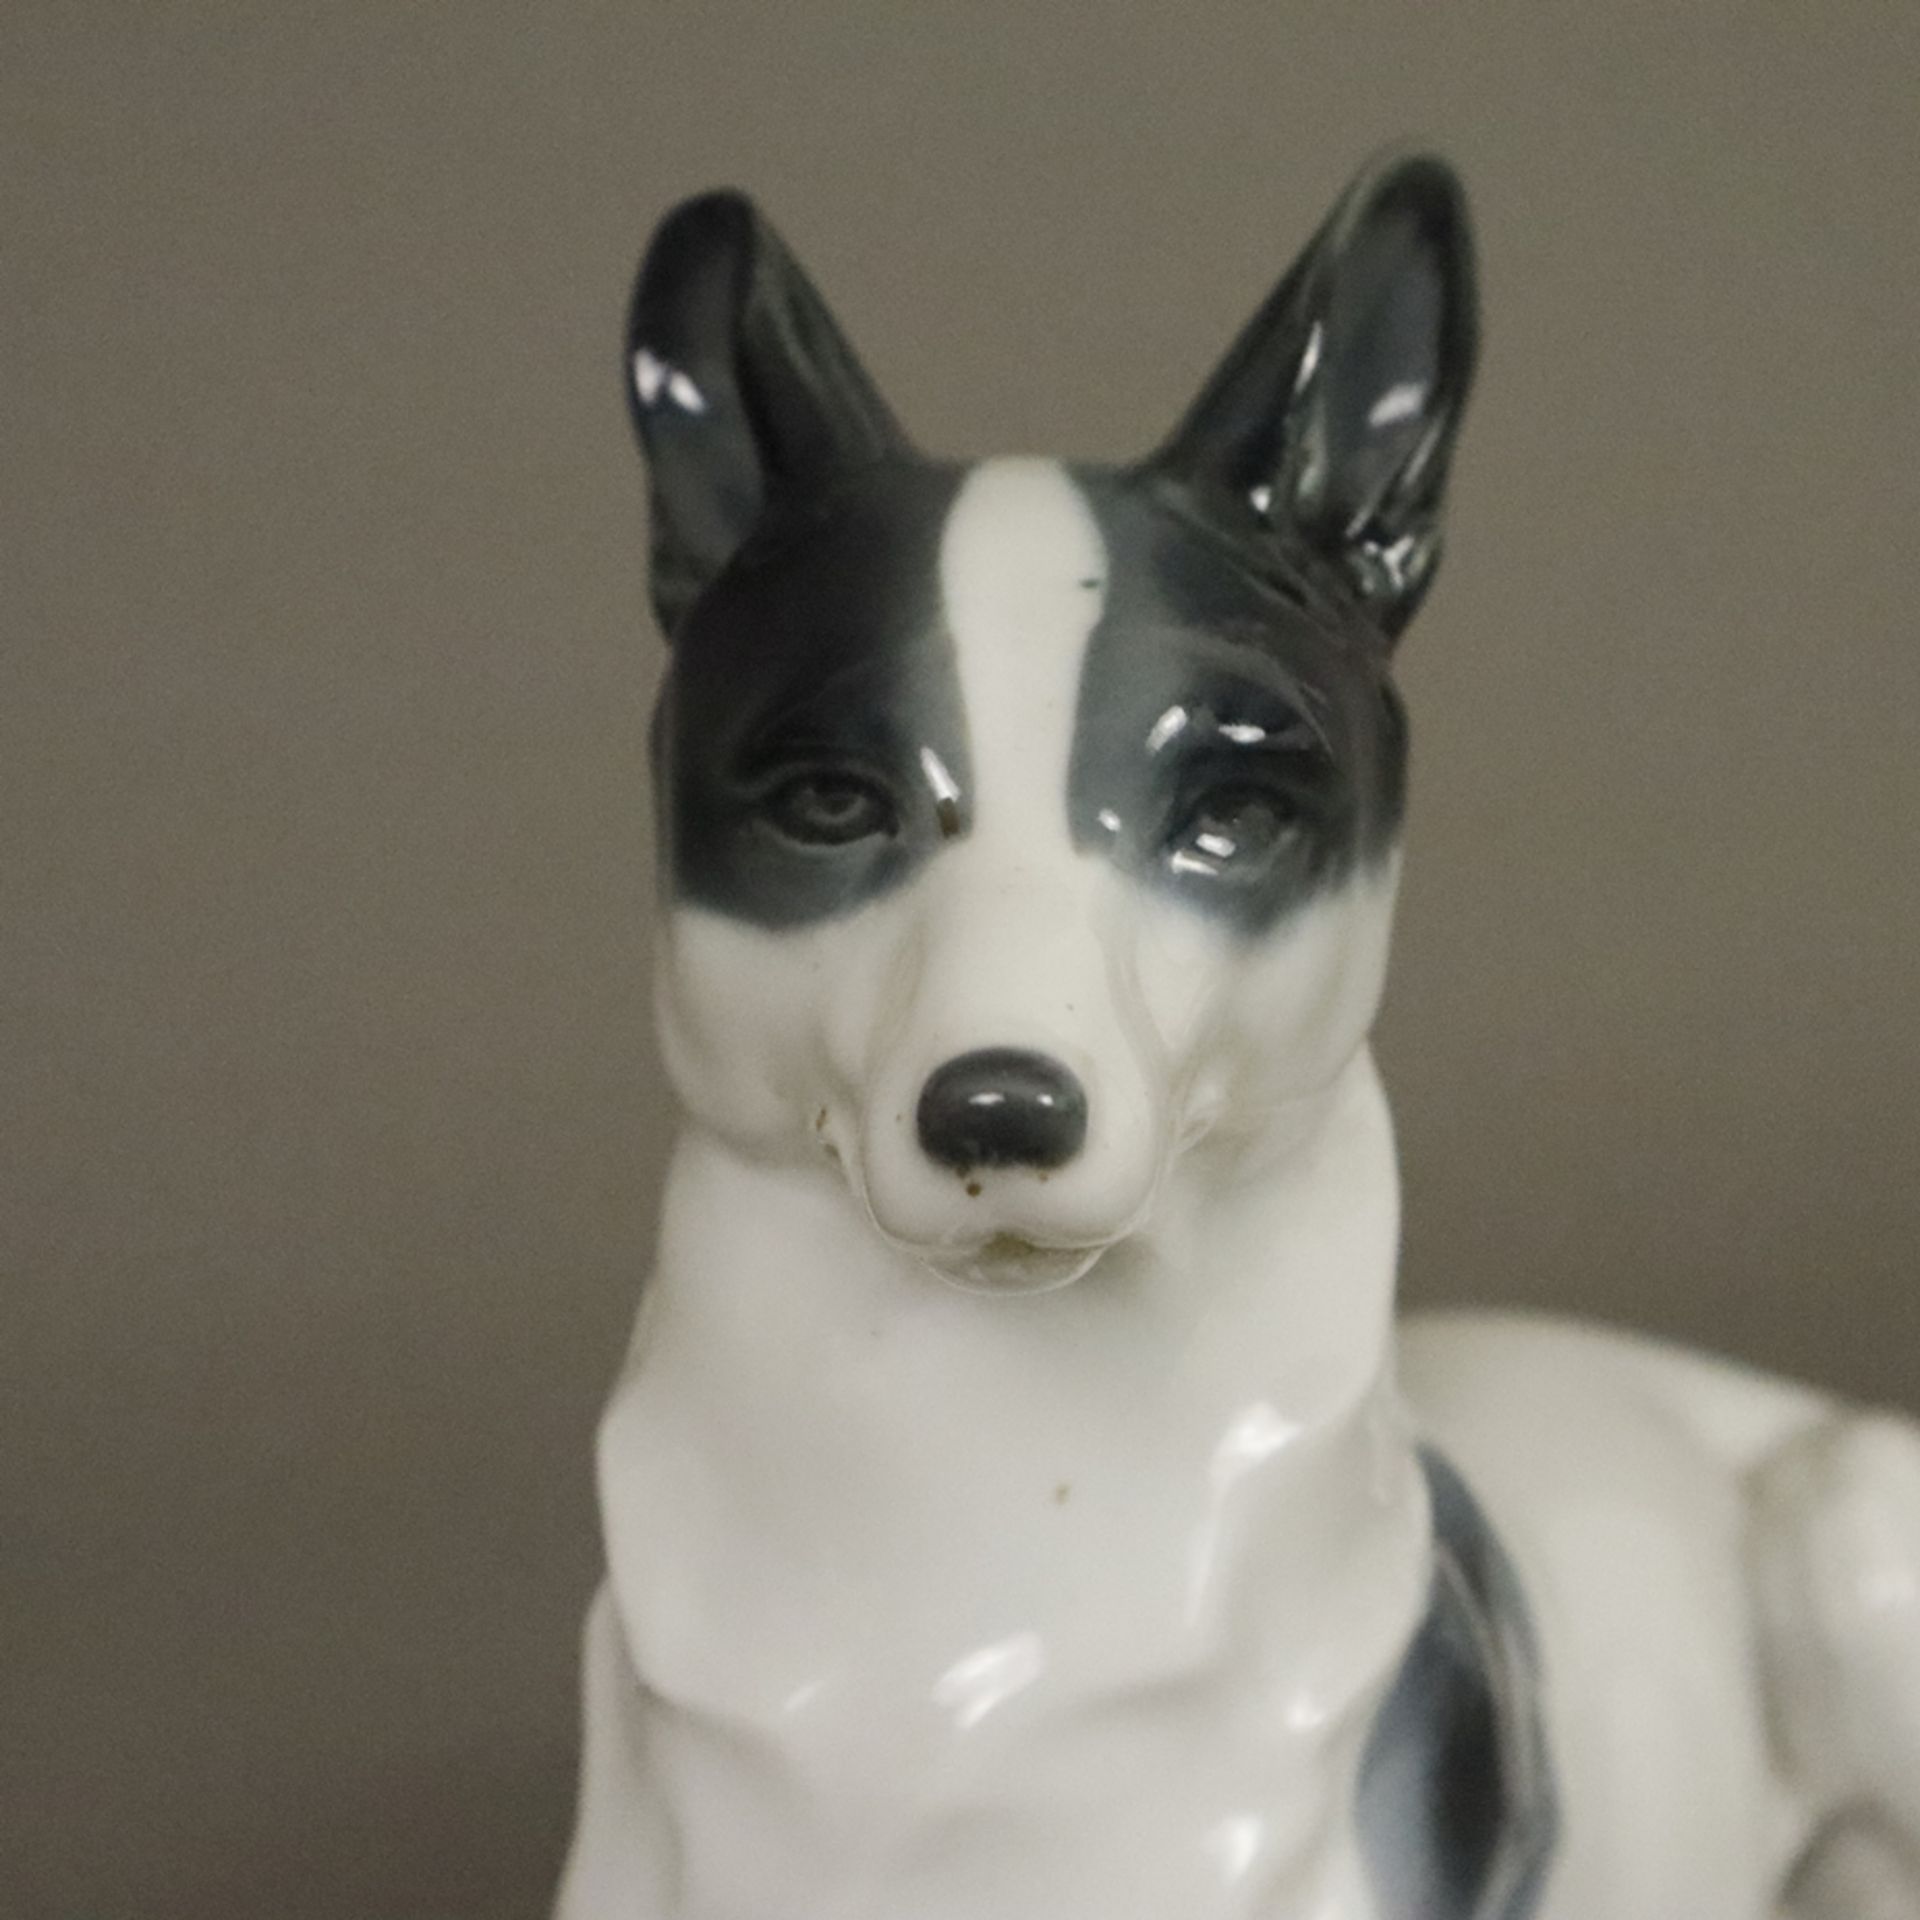 Liegende Hundefigur - Metzler & Orloff, Porzellan glasiert in Grau-Schwarztönen staffiert, Bodenmar - Bild 2 aus 7